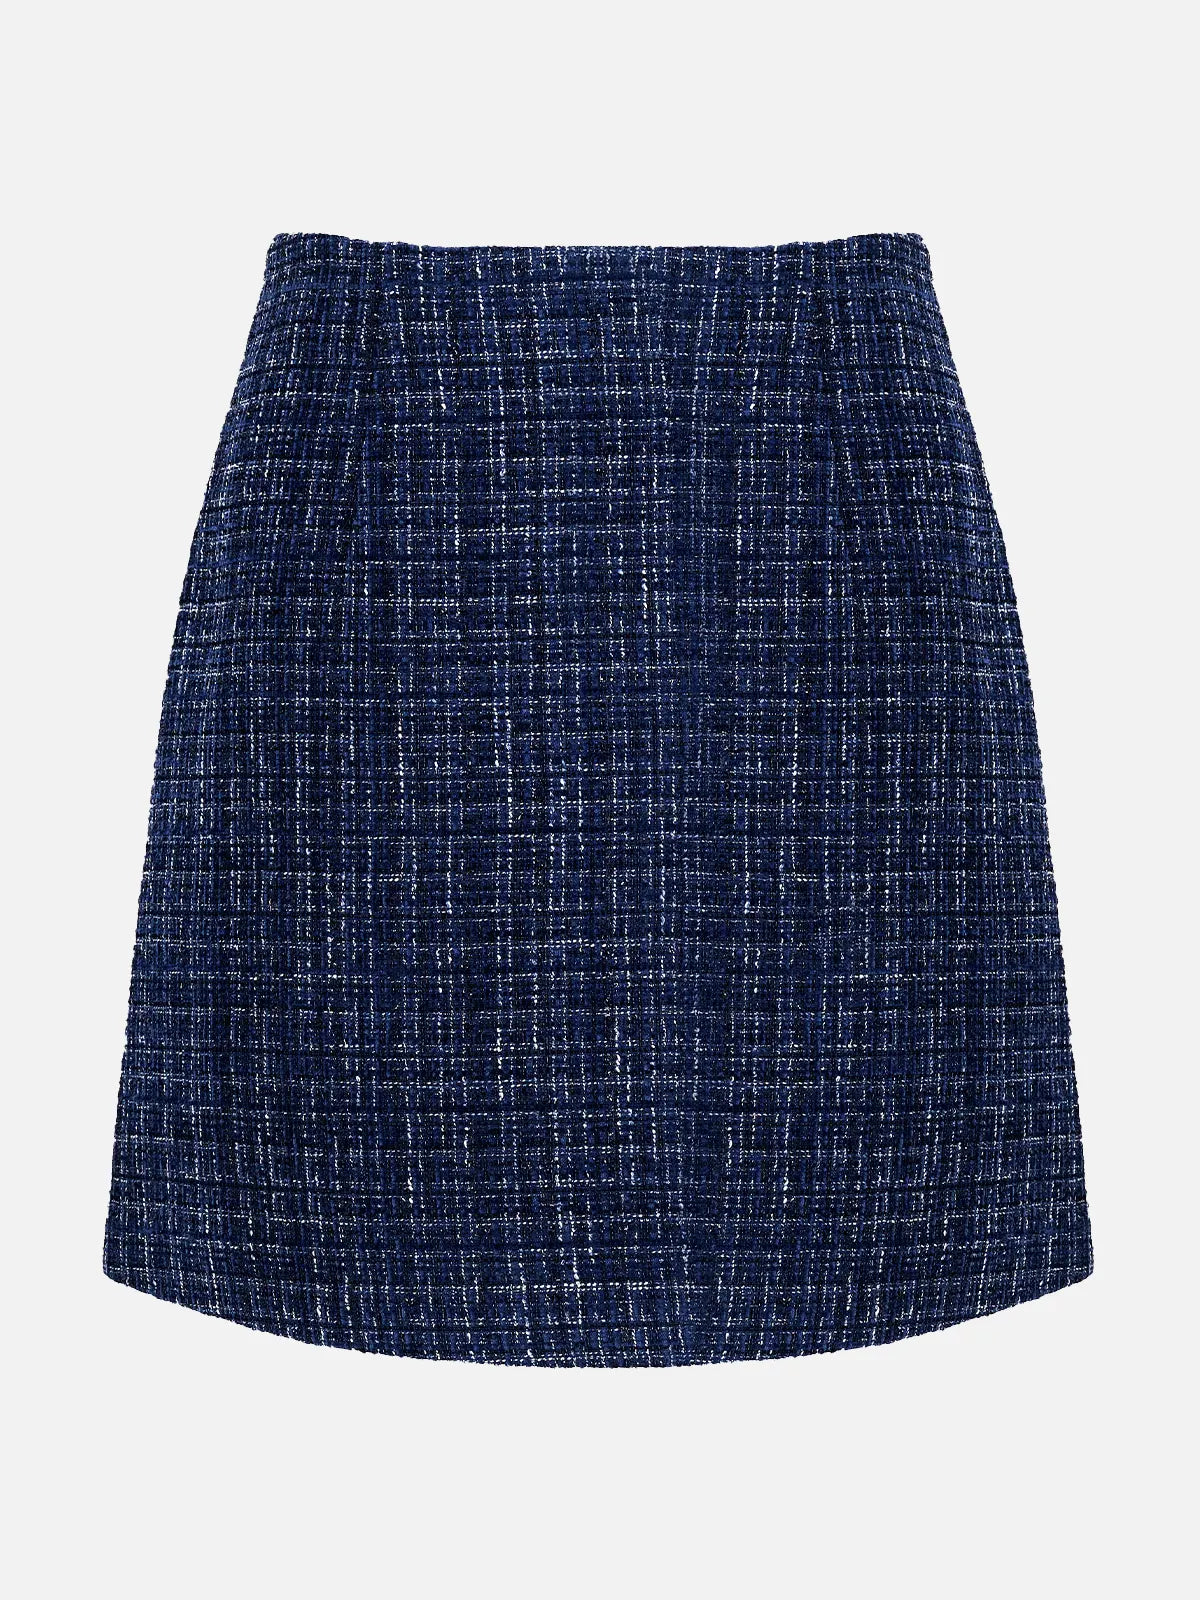 Vintage Plaid A-line Skirt